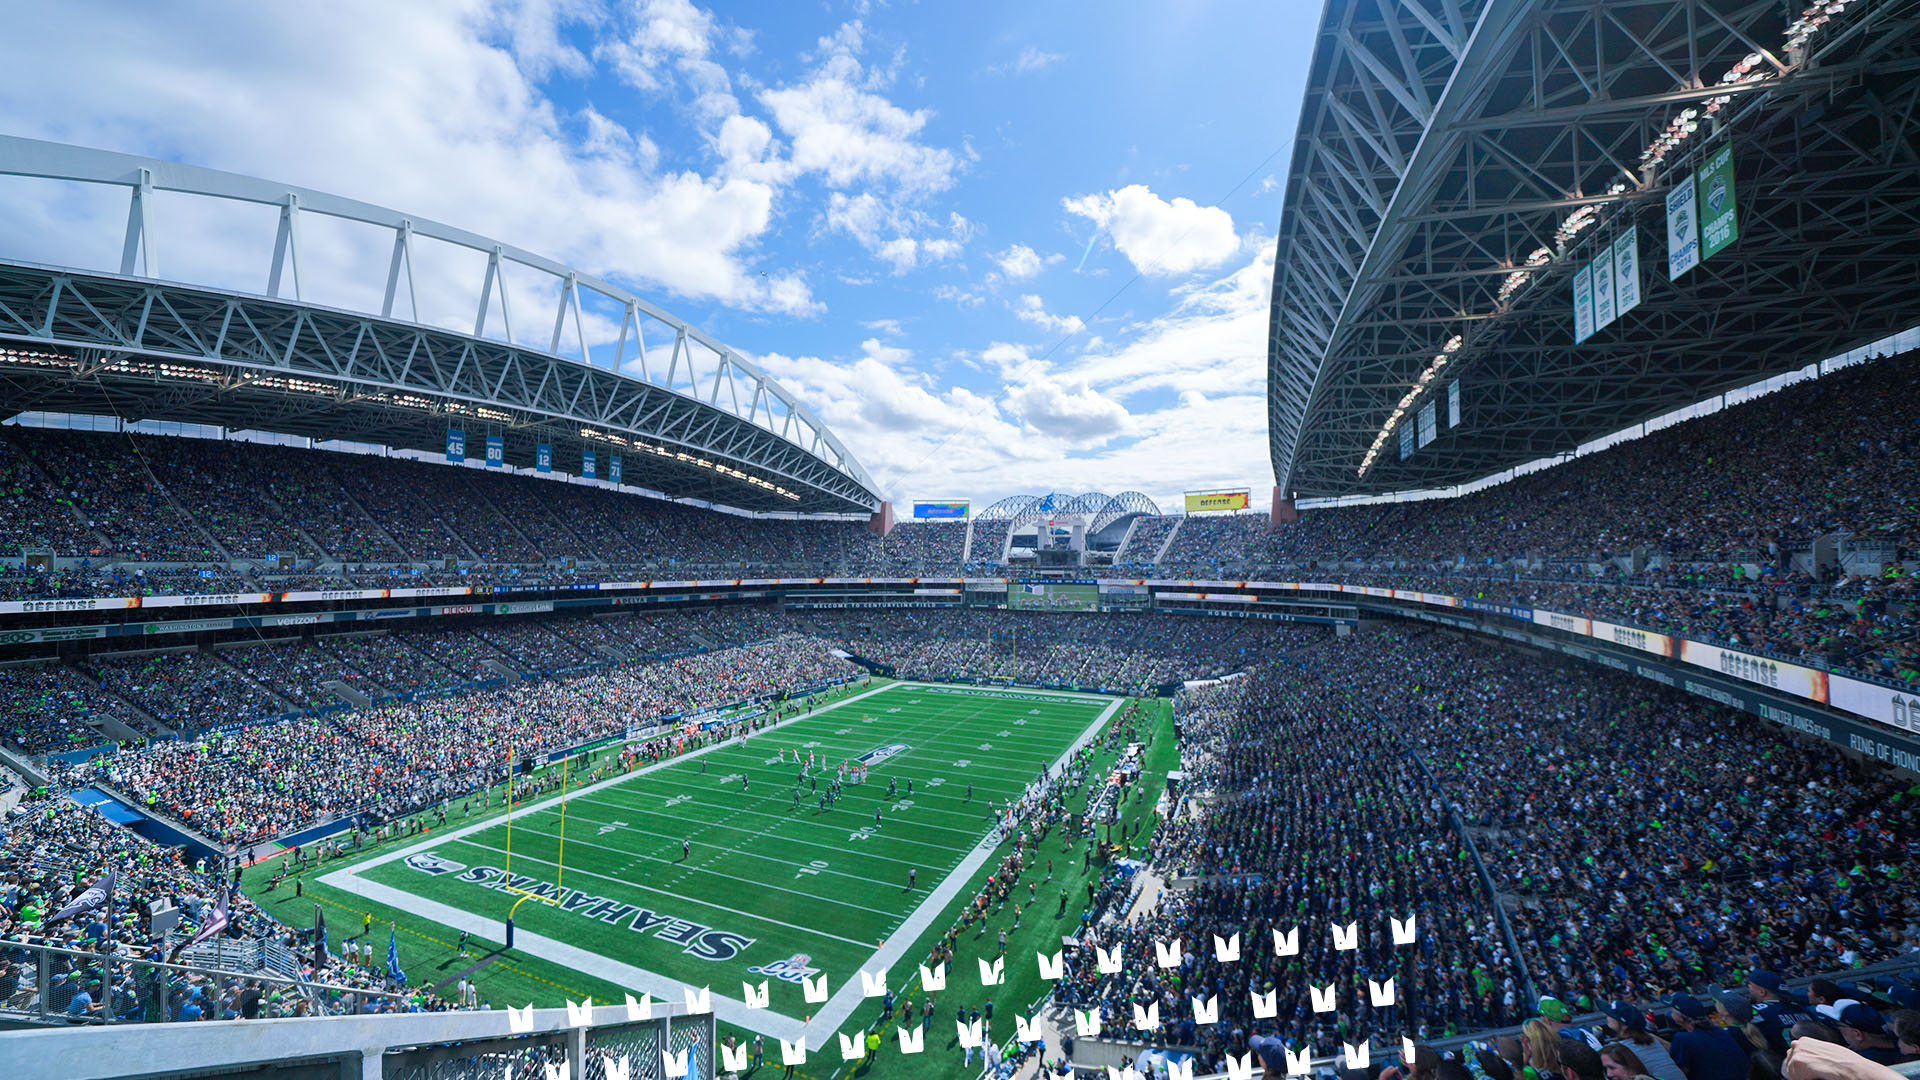 Seahawks Desktop & Tablet Wallpapers | Seattle Seahawks – seahawks.com